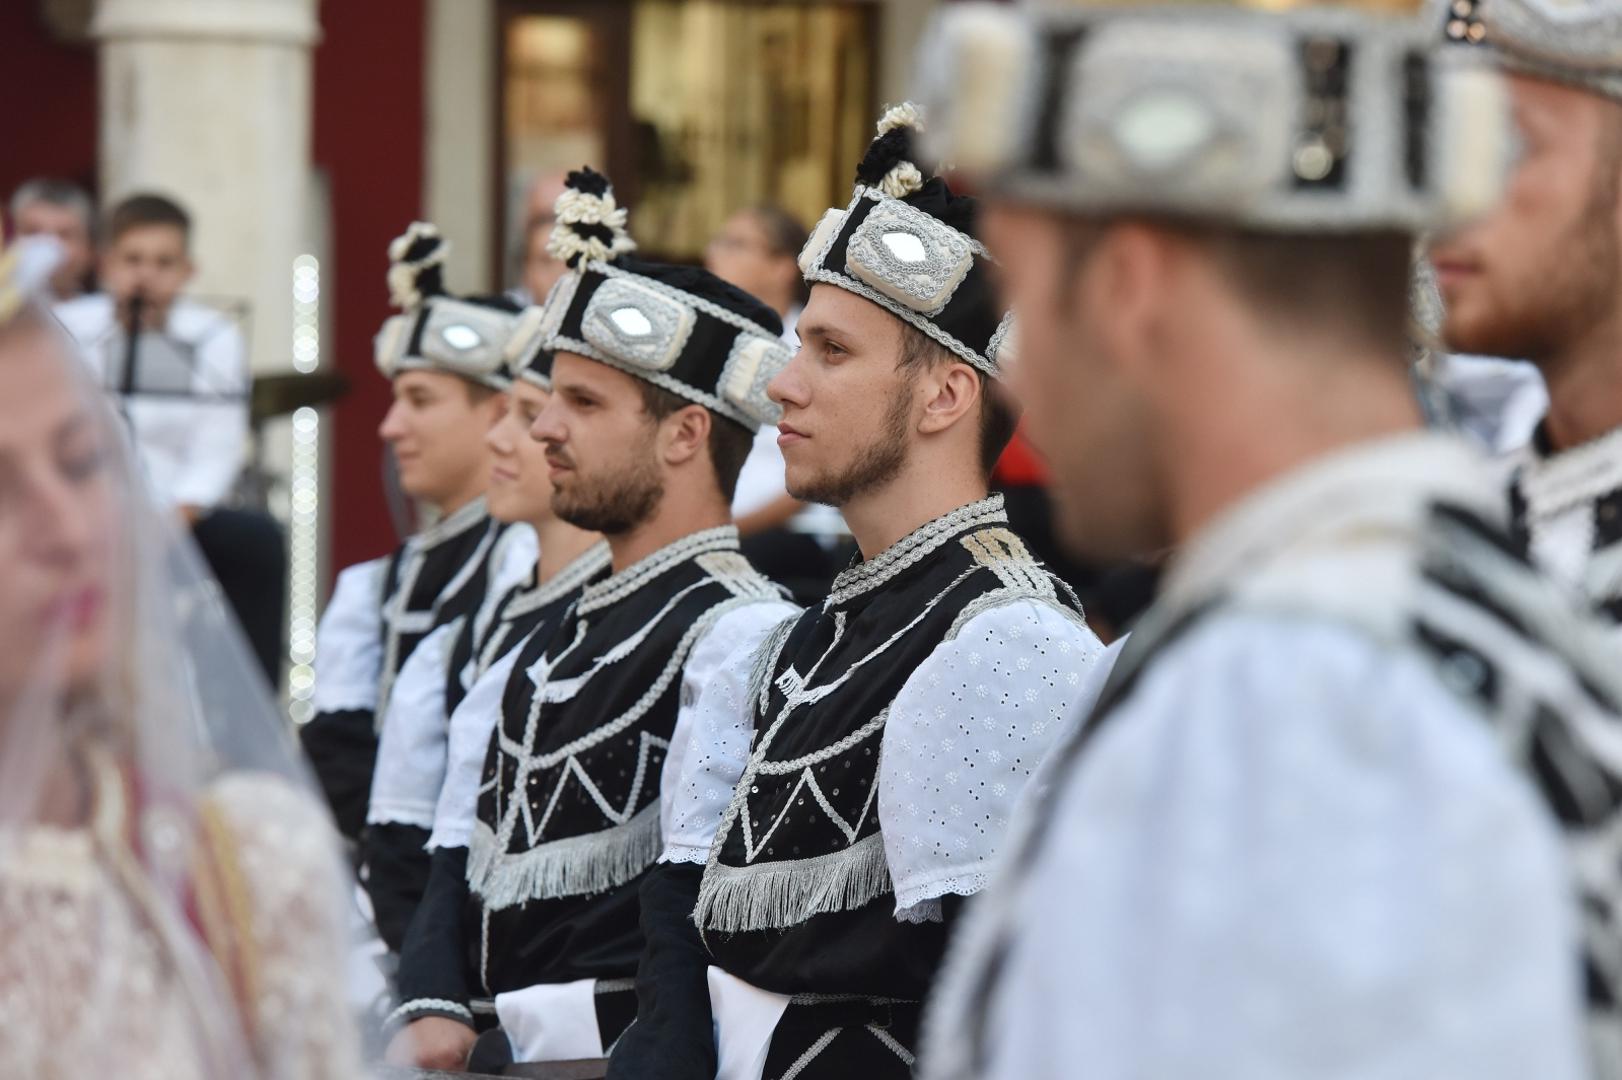 U sklopu Srednjevjekovnog sajma u Šibeniku izvedena je i Moreška, viteški bojevni ples s mačevima.

